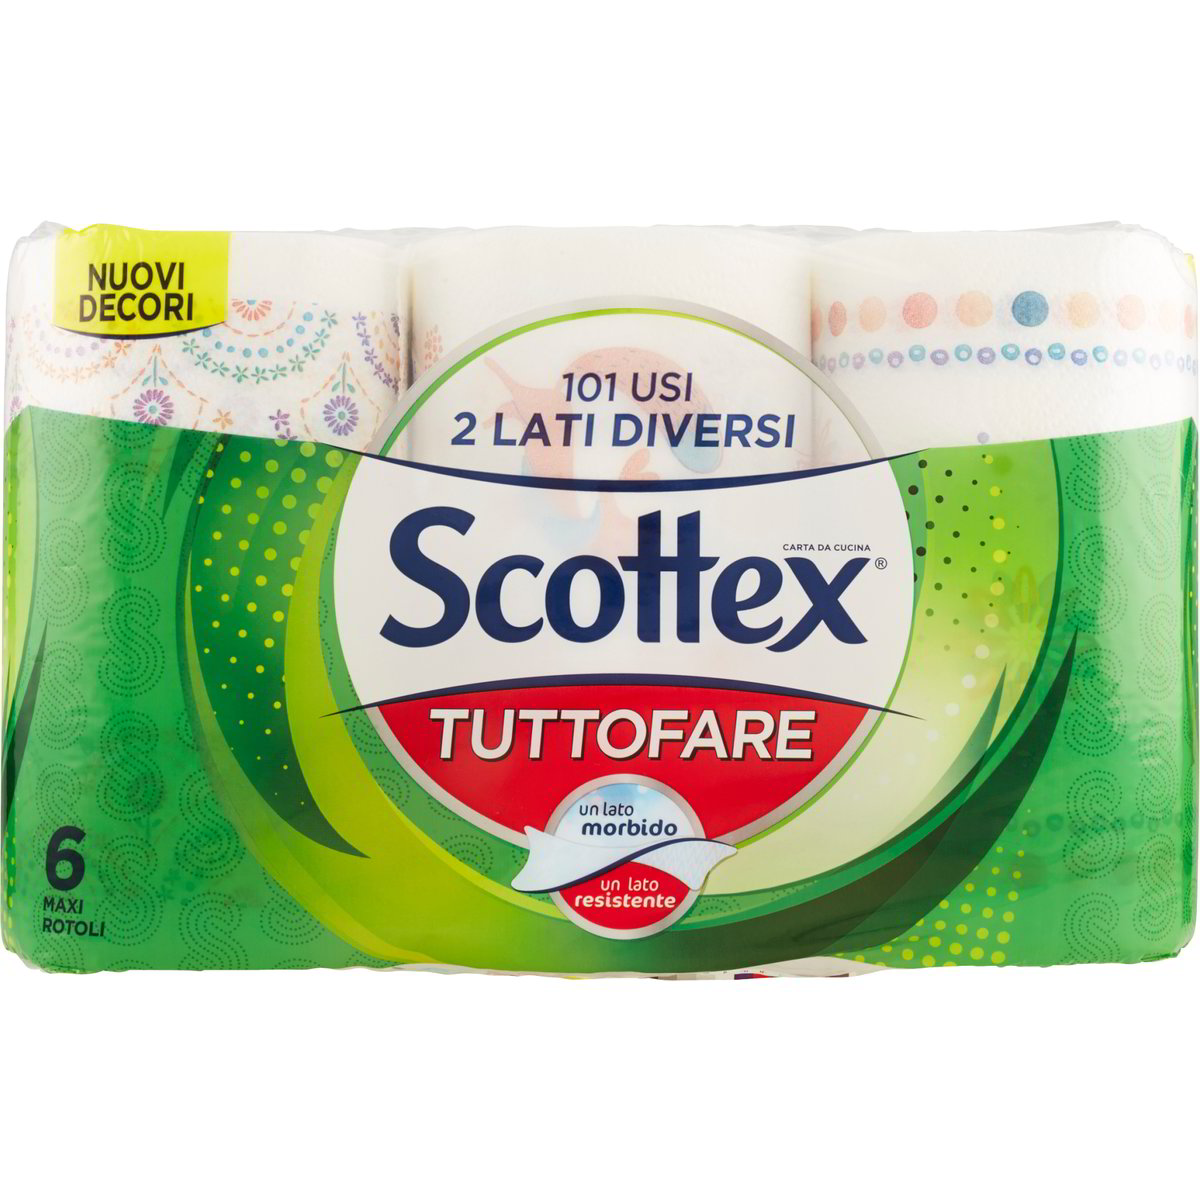 Asciugatutto tuttofare carta da cucina x6 SCOTTEX 1 PZ - Coop Shop